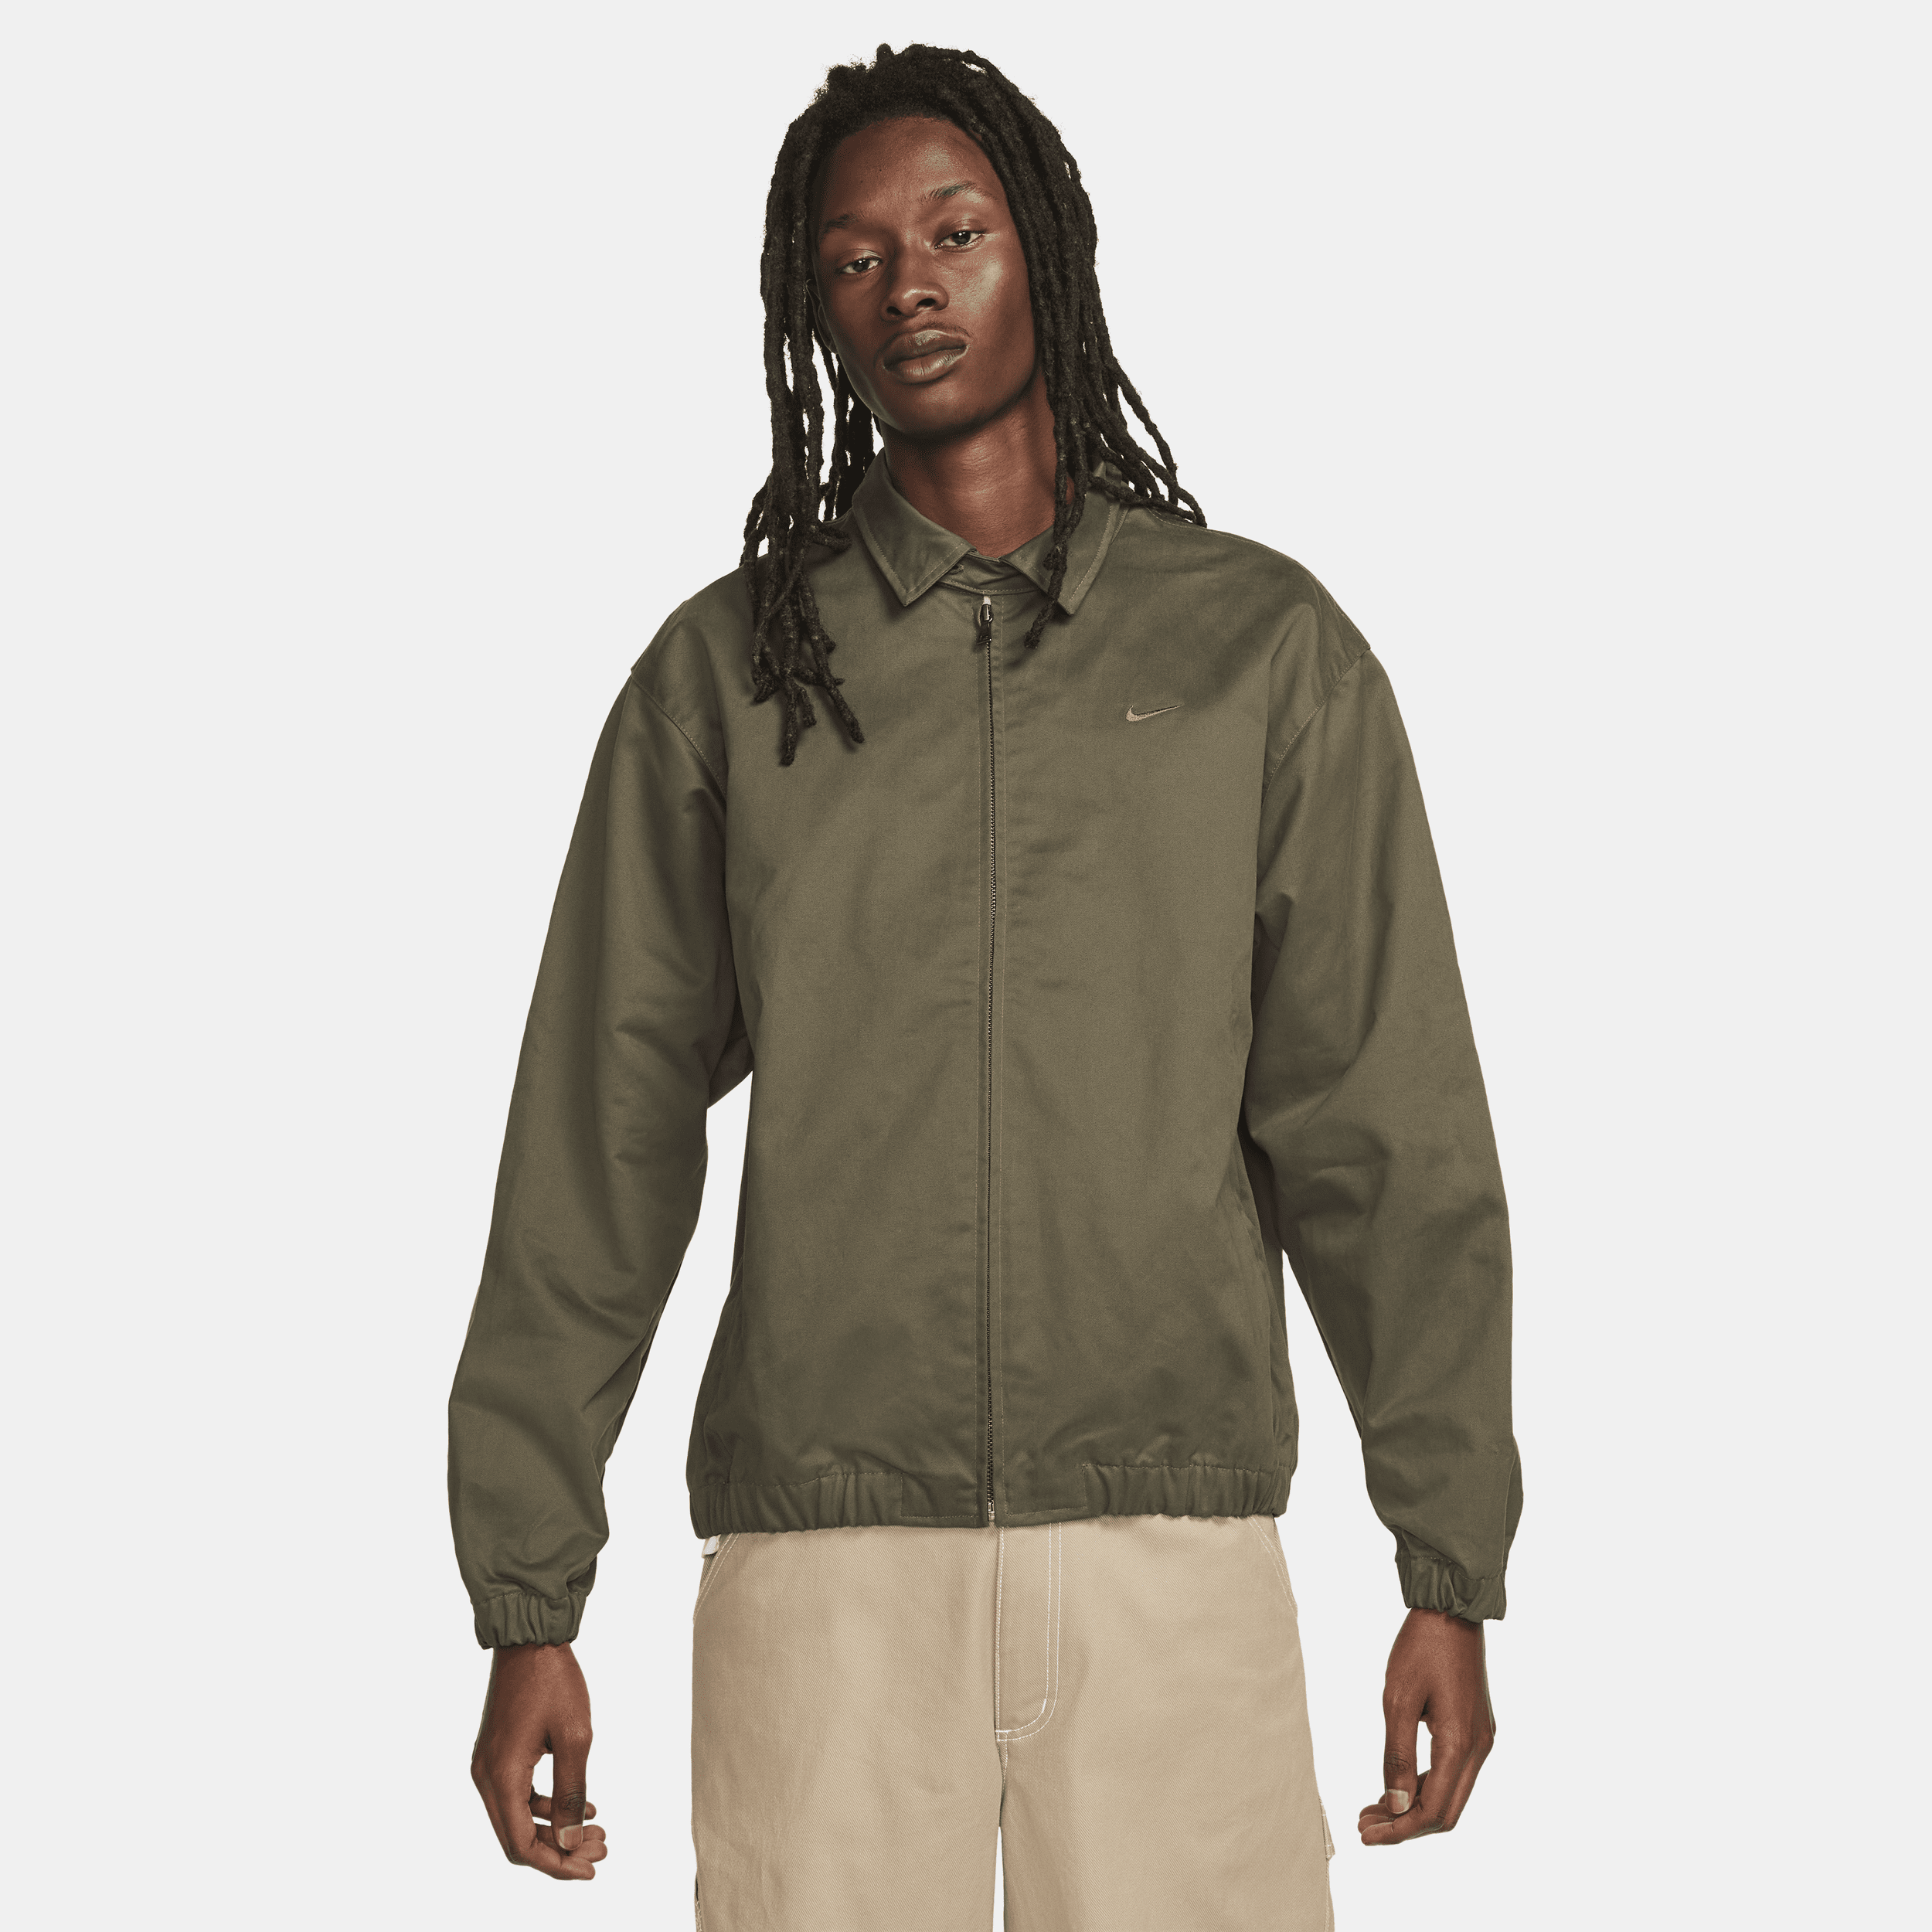 Vævet Nike Life-Harrington-jakke til mænd - grøn